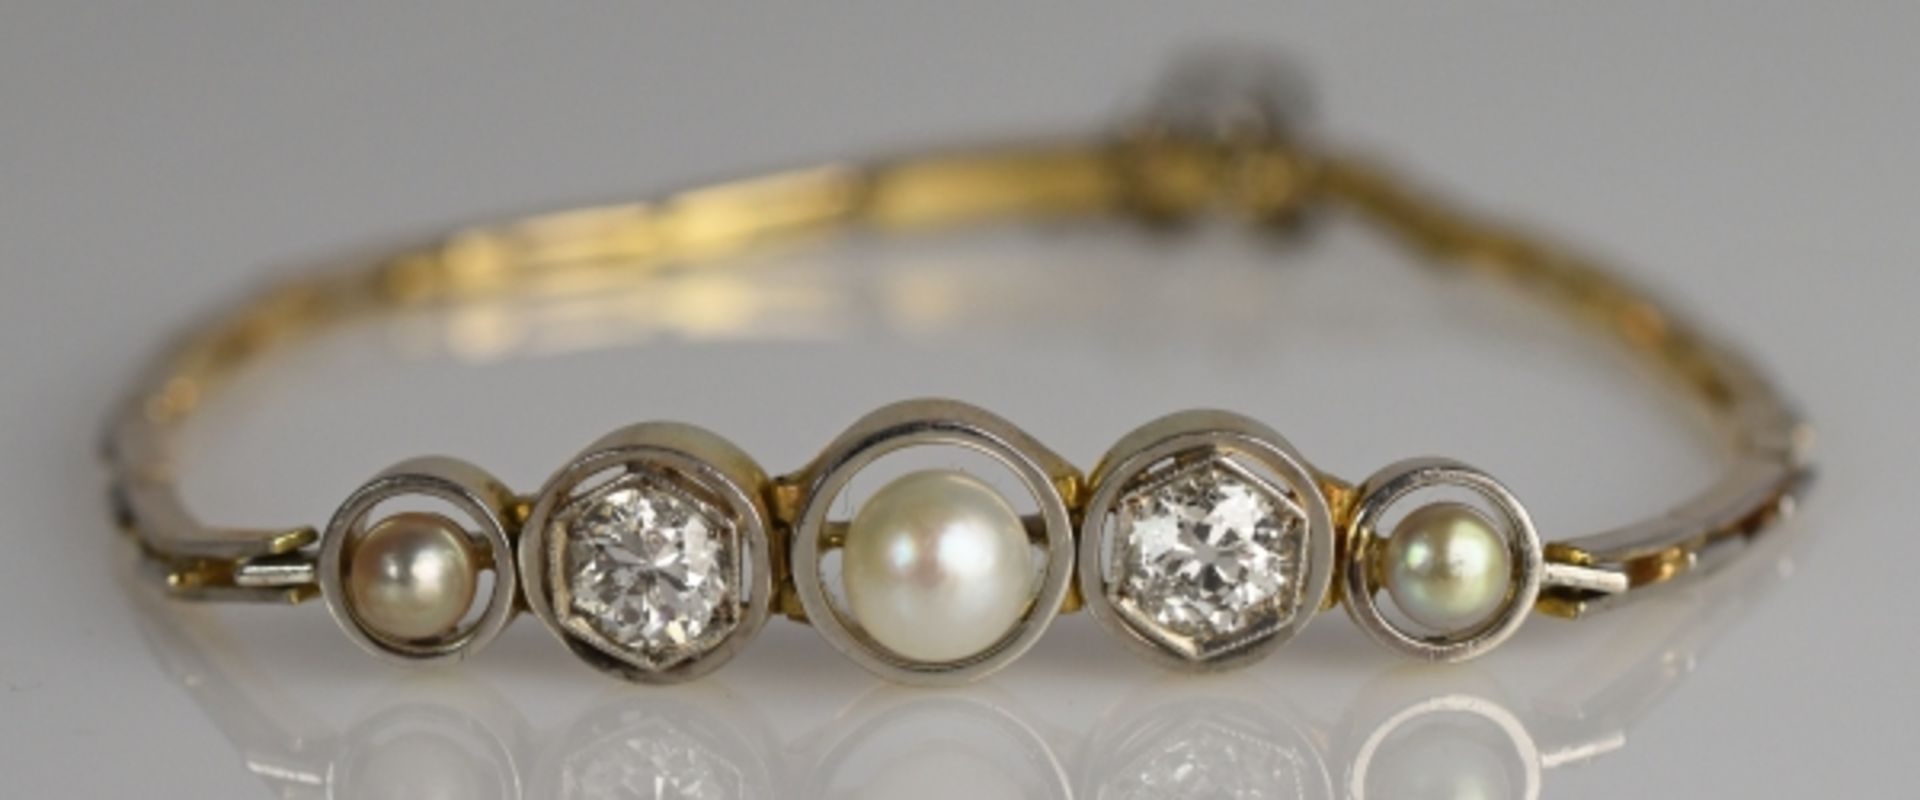 ARMBAND besetzt mit 2 Altschliffdiamanten gesamt um 0,75-1ct und drei Perlen in schlichter